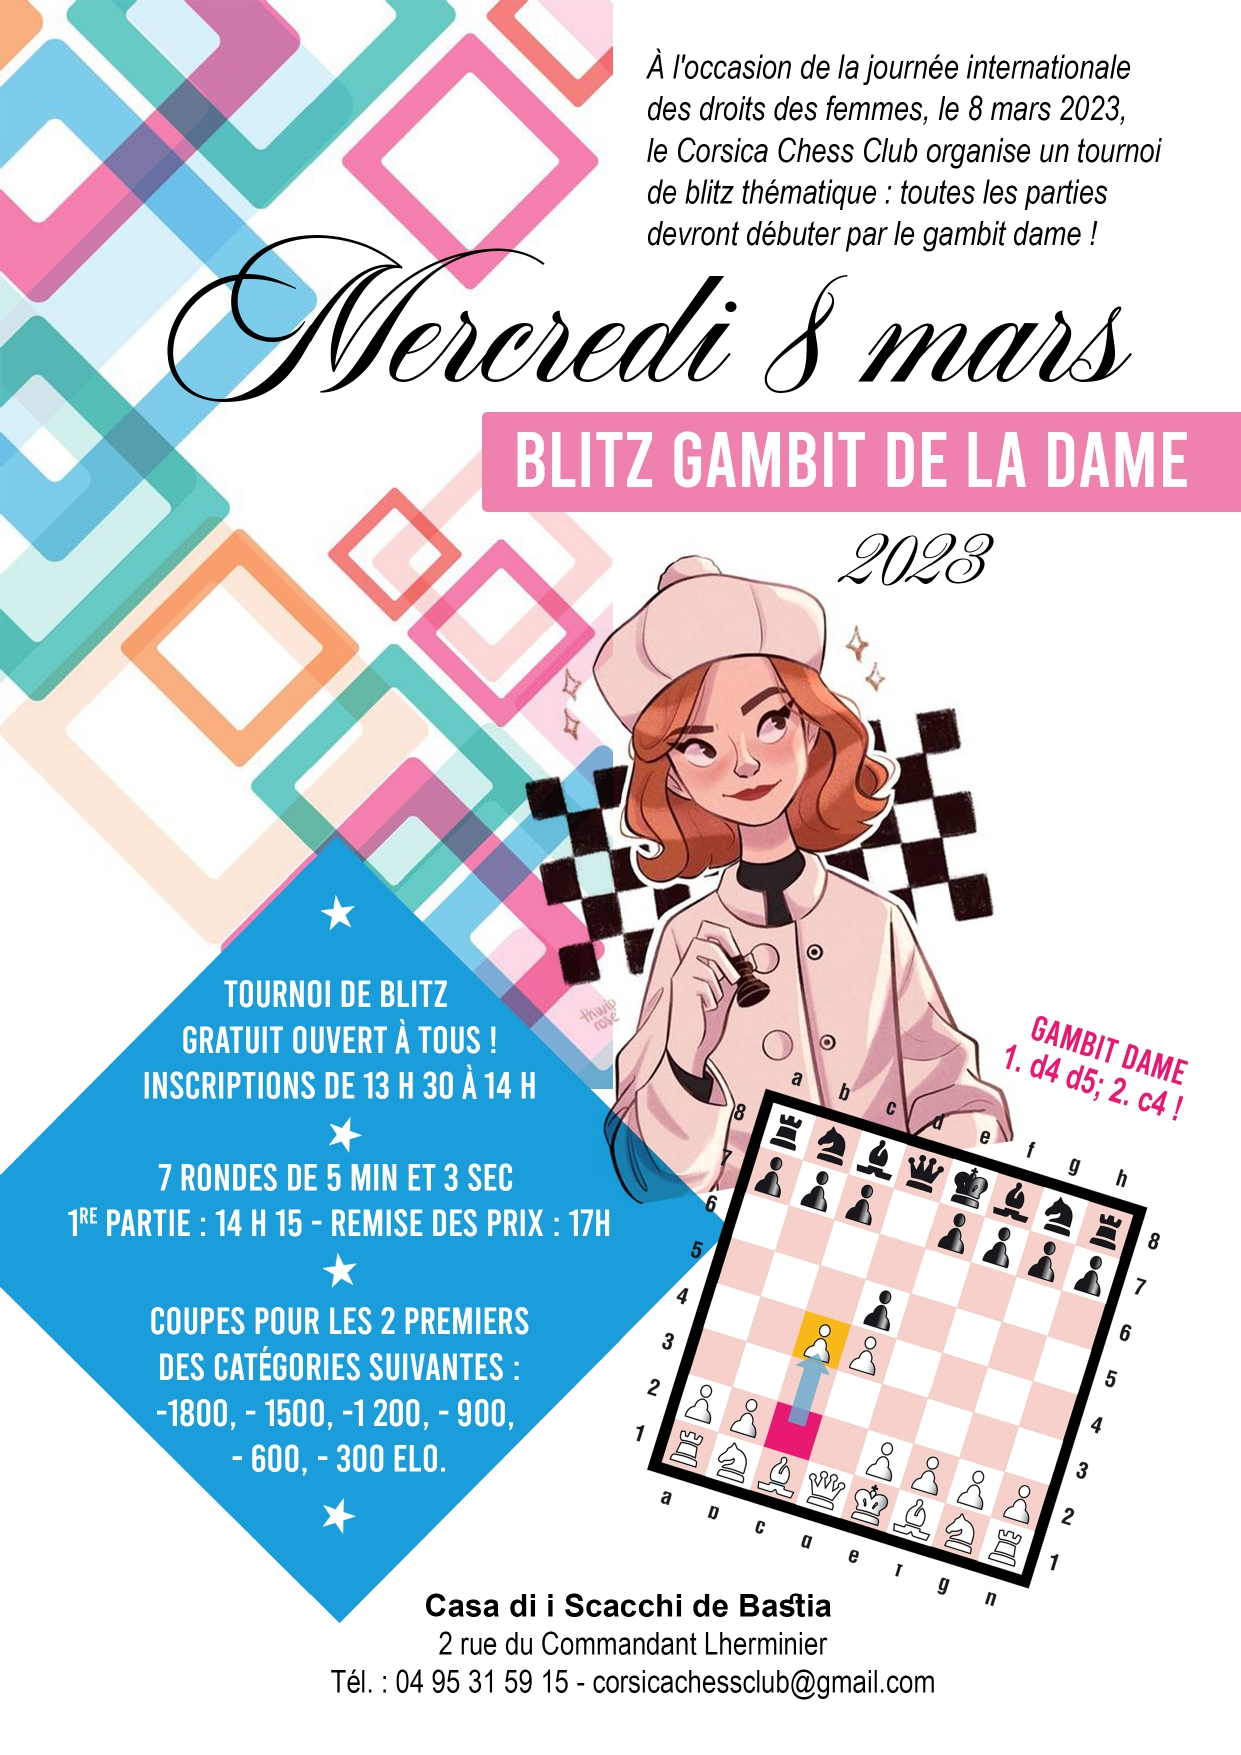 Succès du tournoi Gambit de la Dame pour la journée internationale des droits des femmes et la semaine de la Mixité